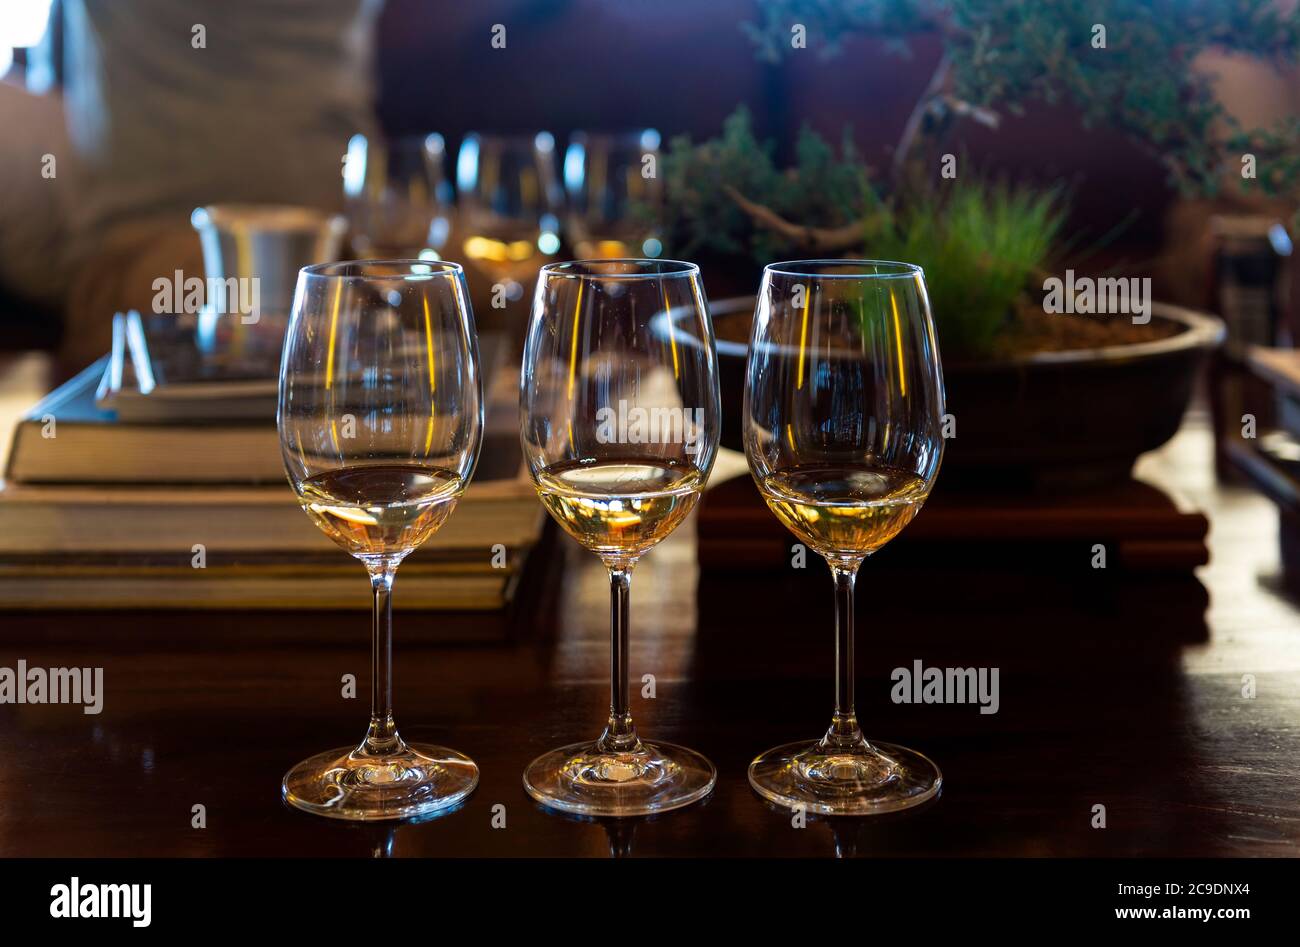 Préparation de trois verres de vin blanc (Sauvignon blanc et Chardonnay) pour une dégustation de vins en Afrique du Sud. Banque D'Images